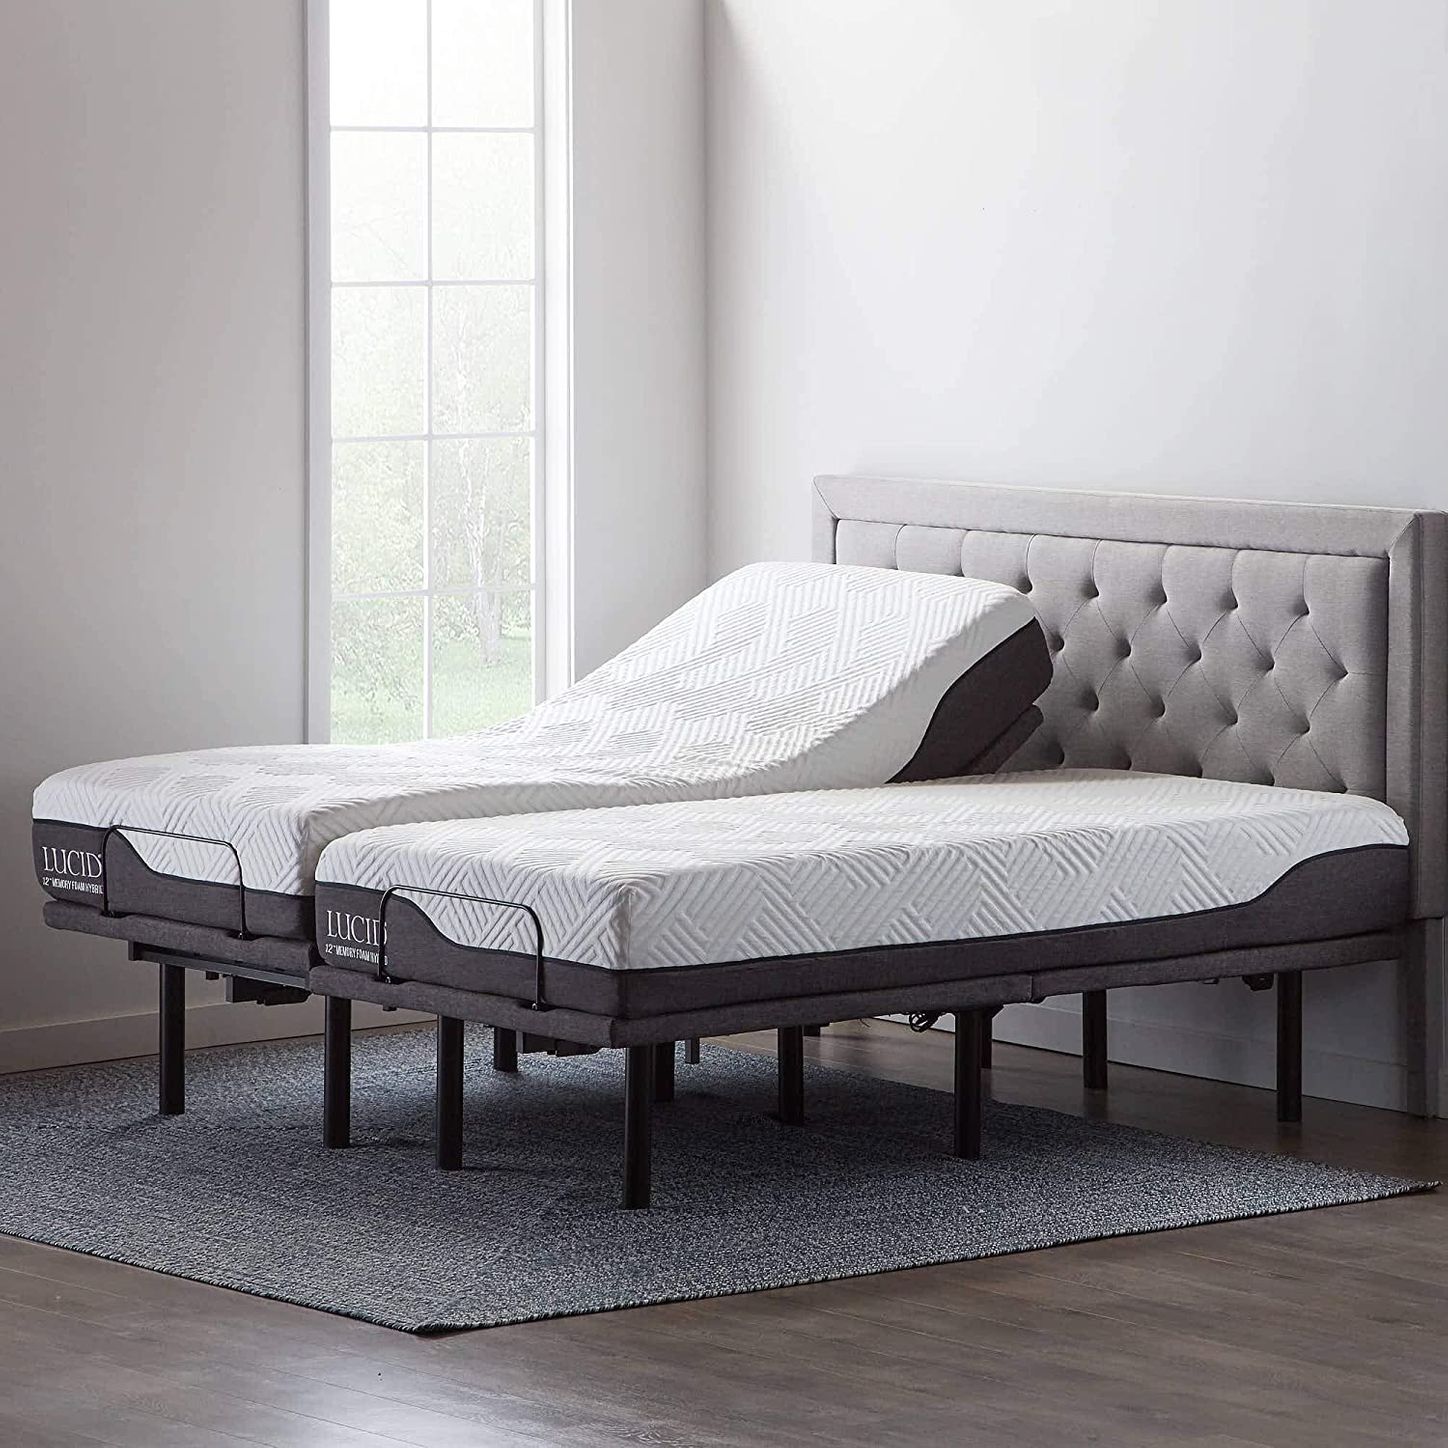 10 Best Adjustable Bed Bases 2022 The, Split King Adjustable Bed Frame With Massage